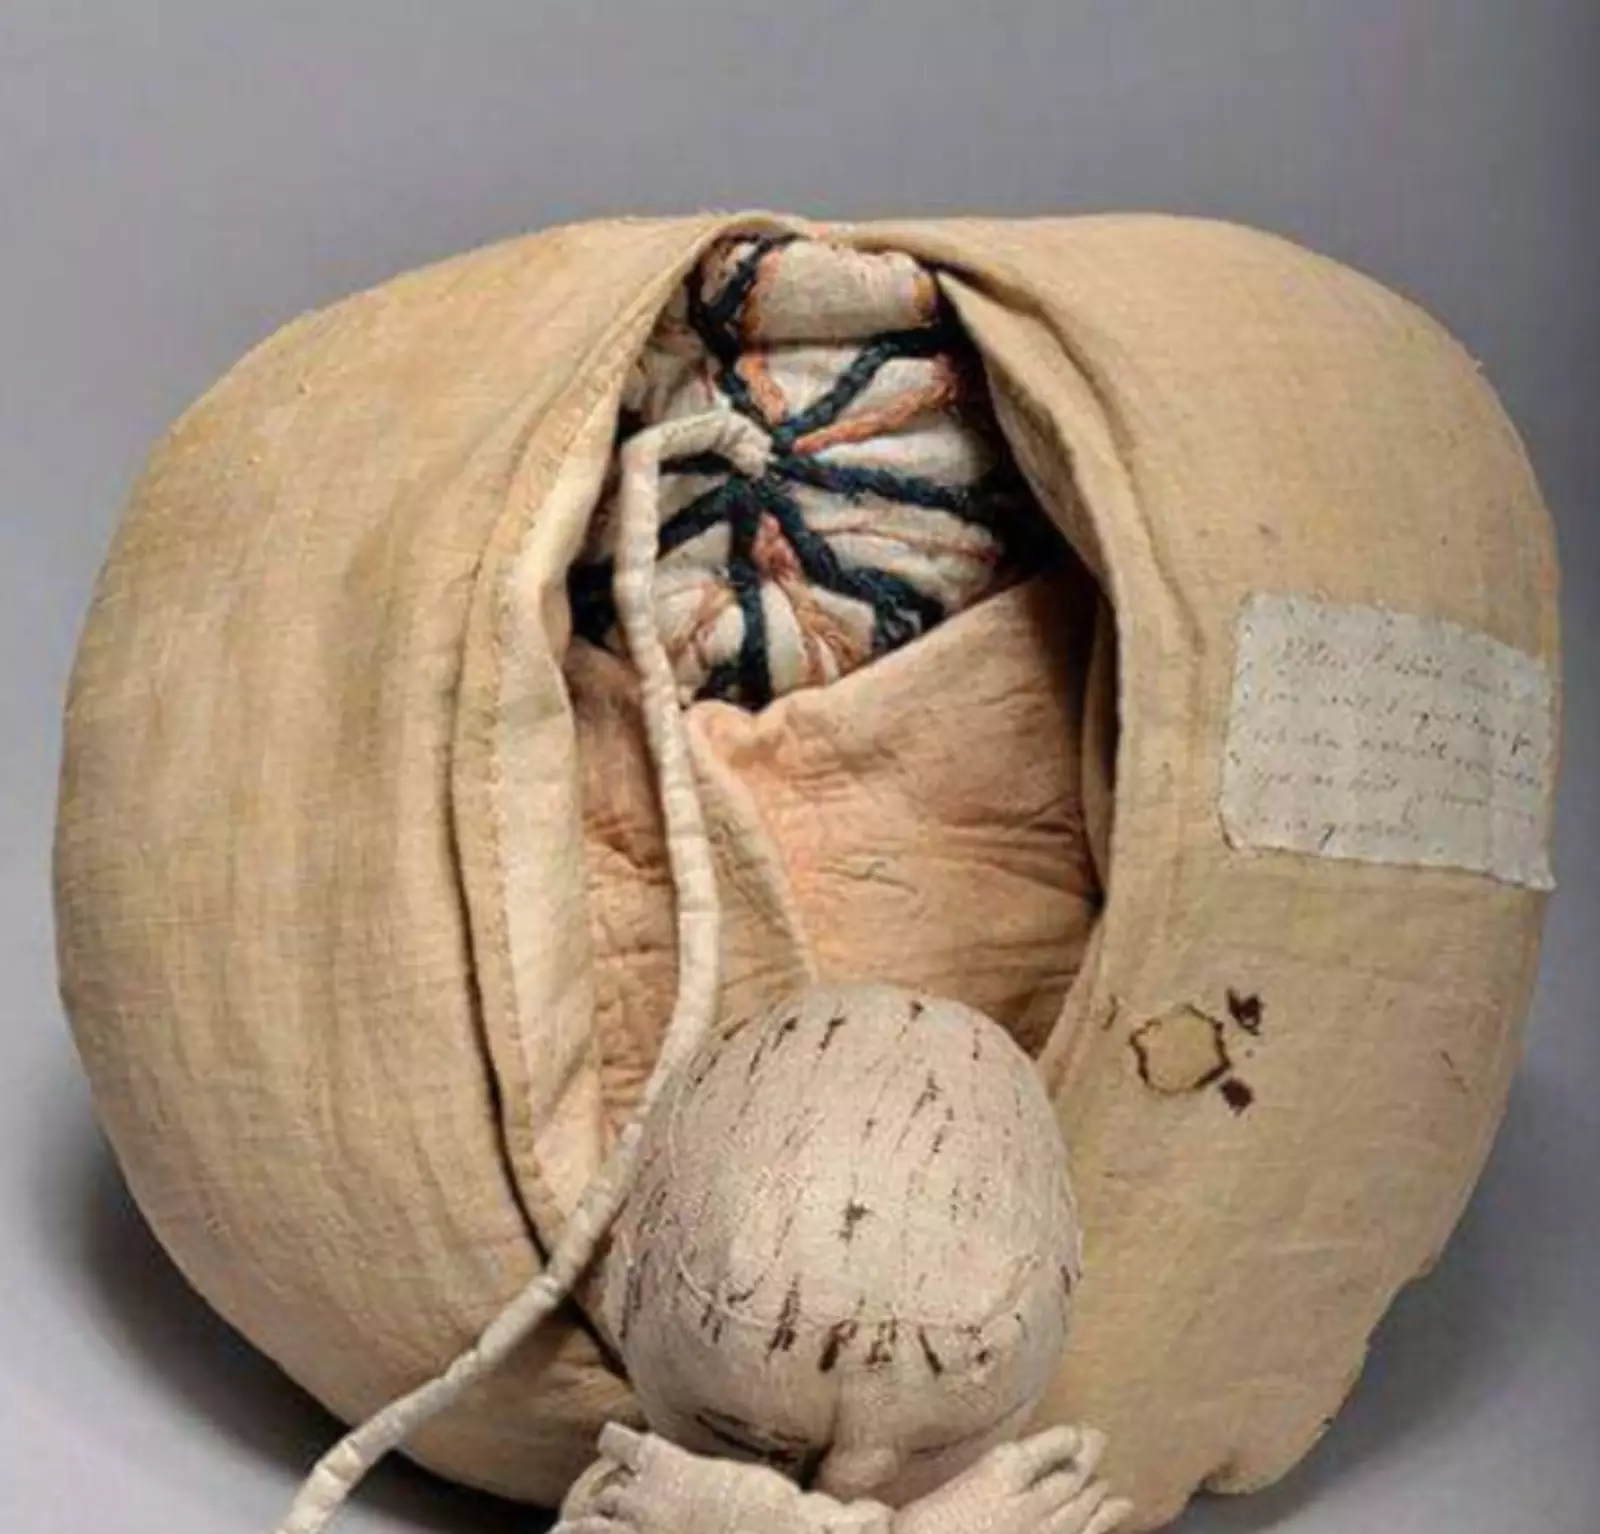 Матка из ткани 1760 года. В то время во Франции активно обучали сельских женщин акушерству, чтобы снизить младенческую смертность. 